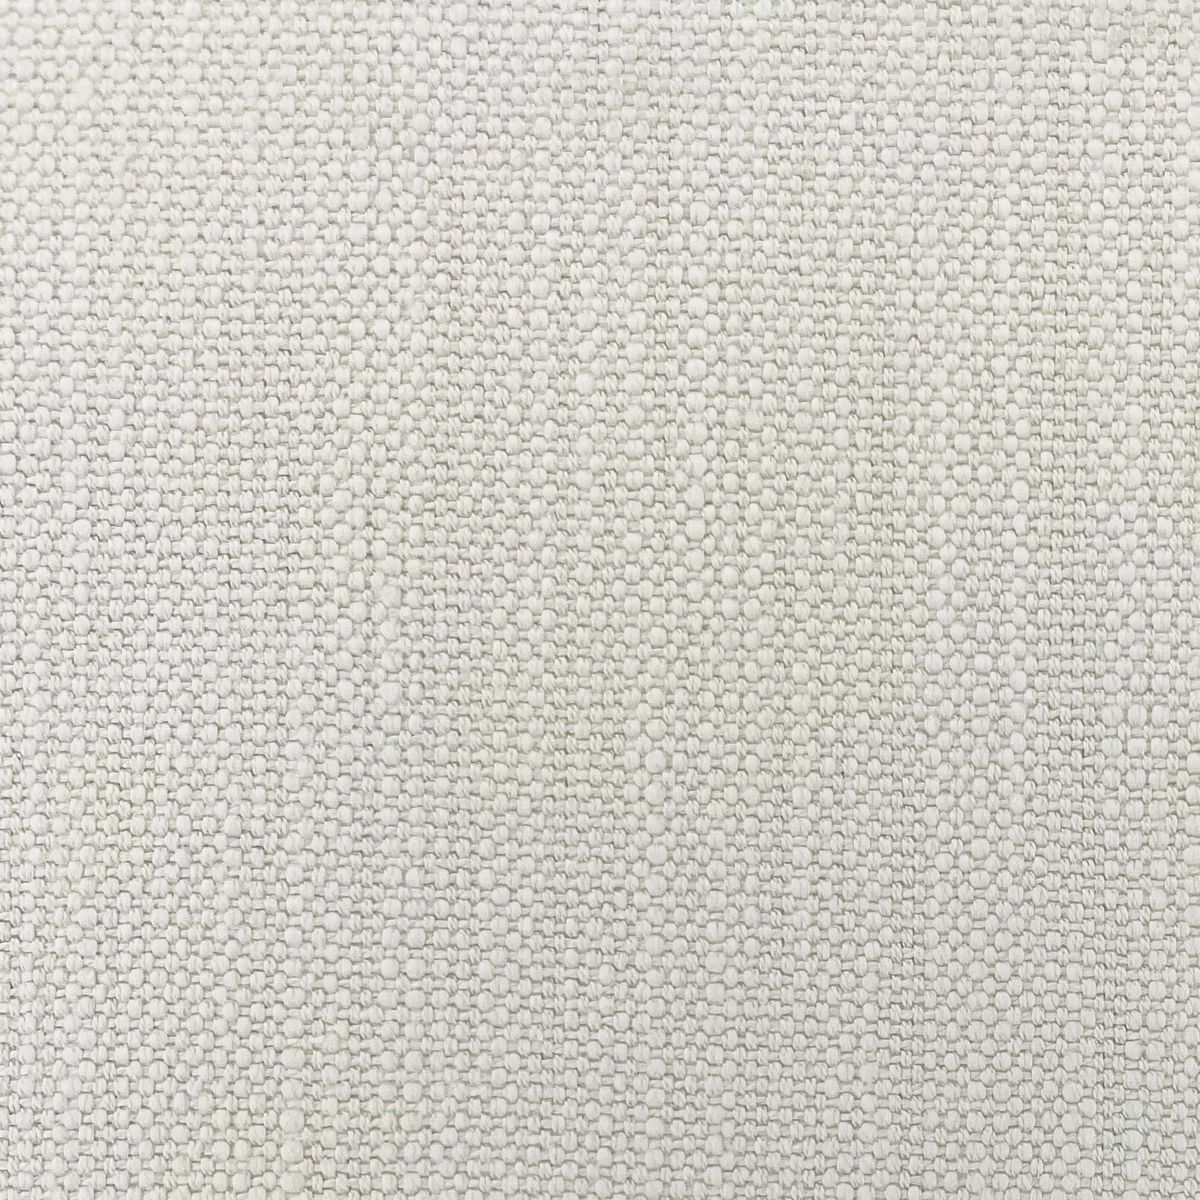 Pimlico Whitesand Fabric by Chatham Glyn